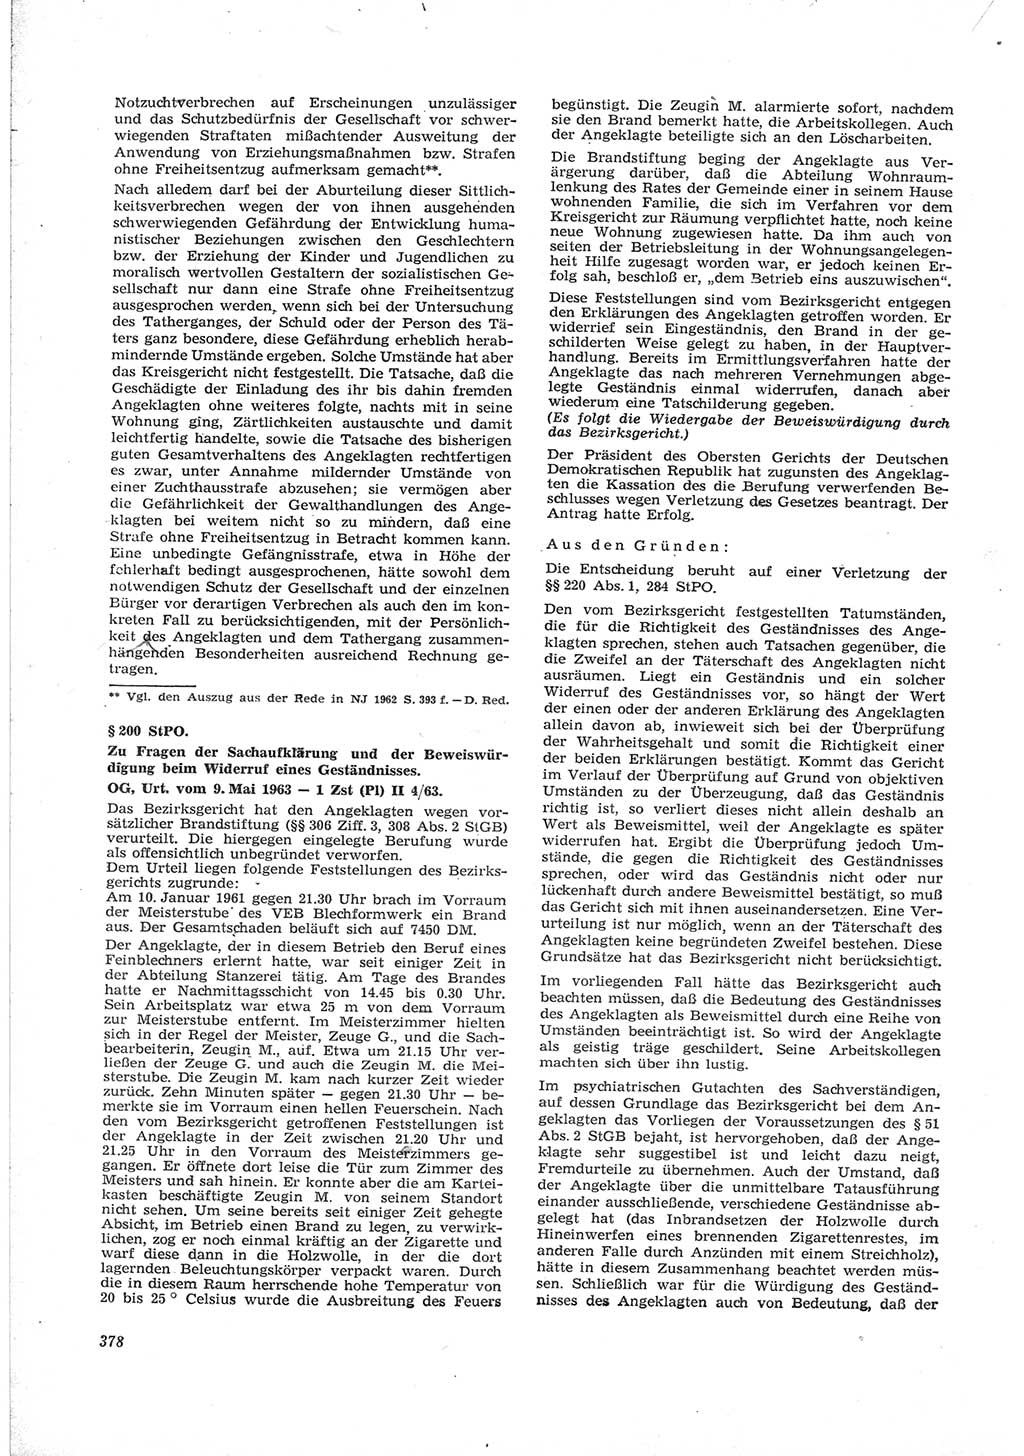 Neue Justiz (NJ), Zeitschrift für Recht und Rechtswissenschaft [Deutsche Demokratische Republik (DDR)], 17. Jahrgang 1963, Seite 378 (NJ DDR 1963, S. 378)